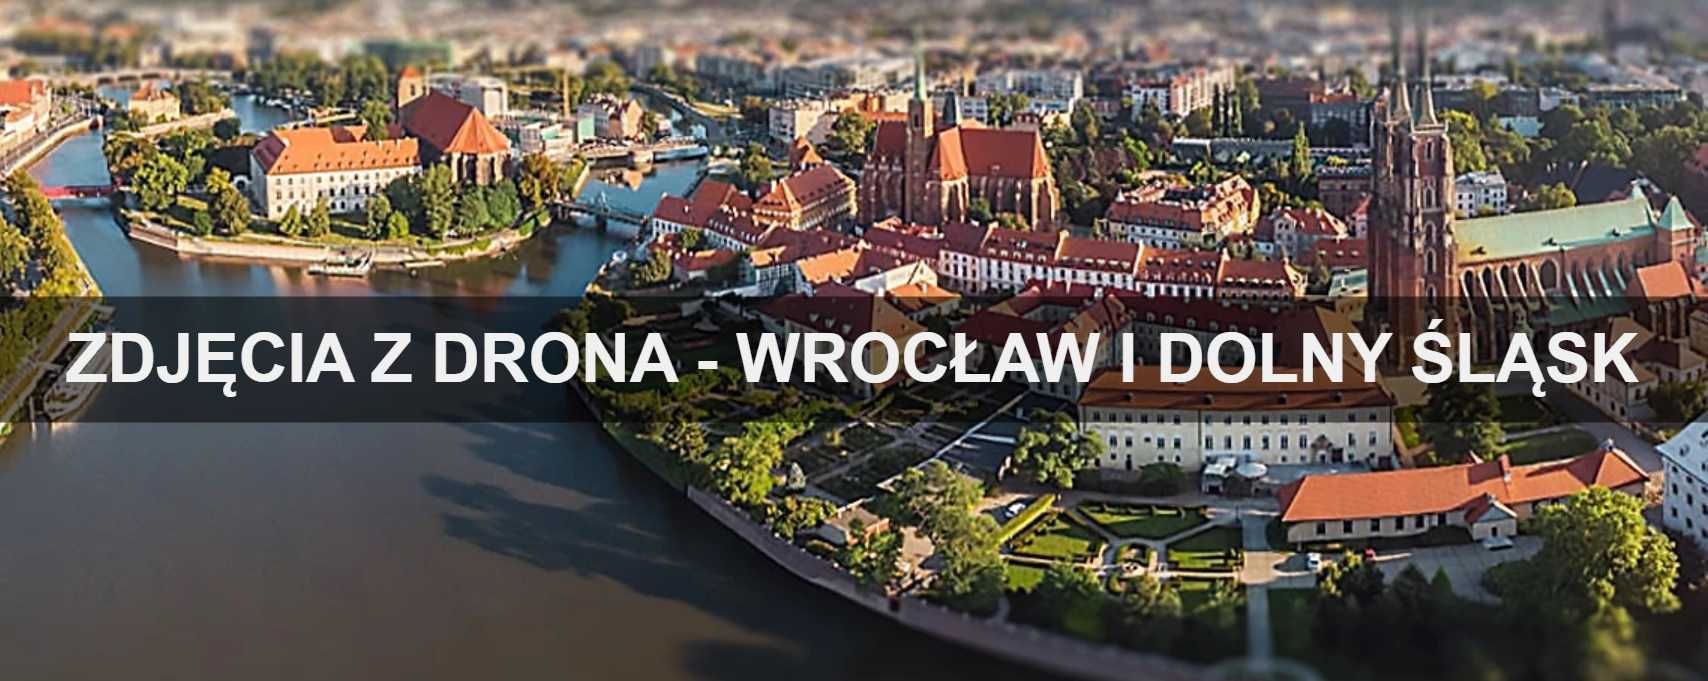 Zdjęcia z drona Wrocław - usługi dronem - filmy z drona